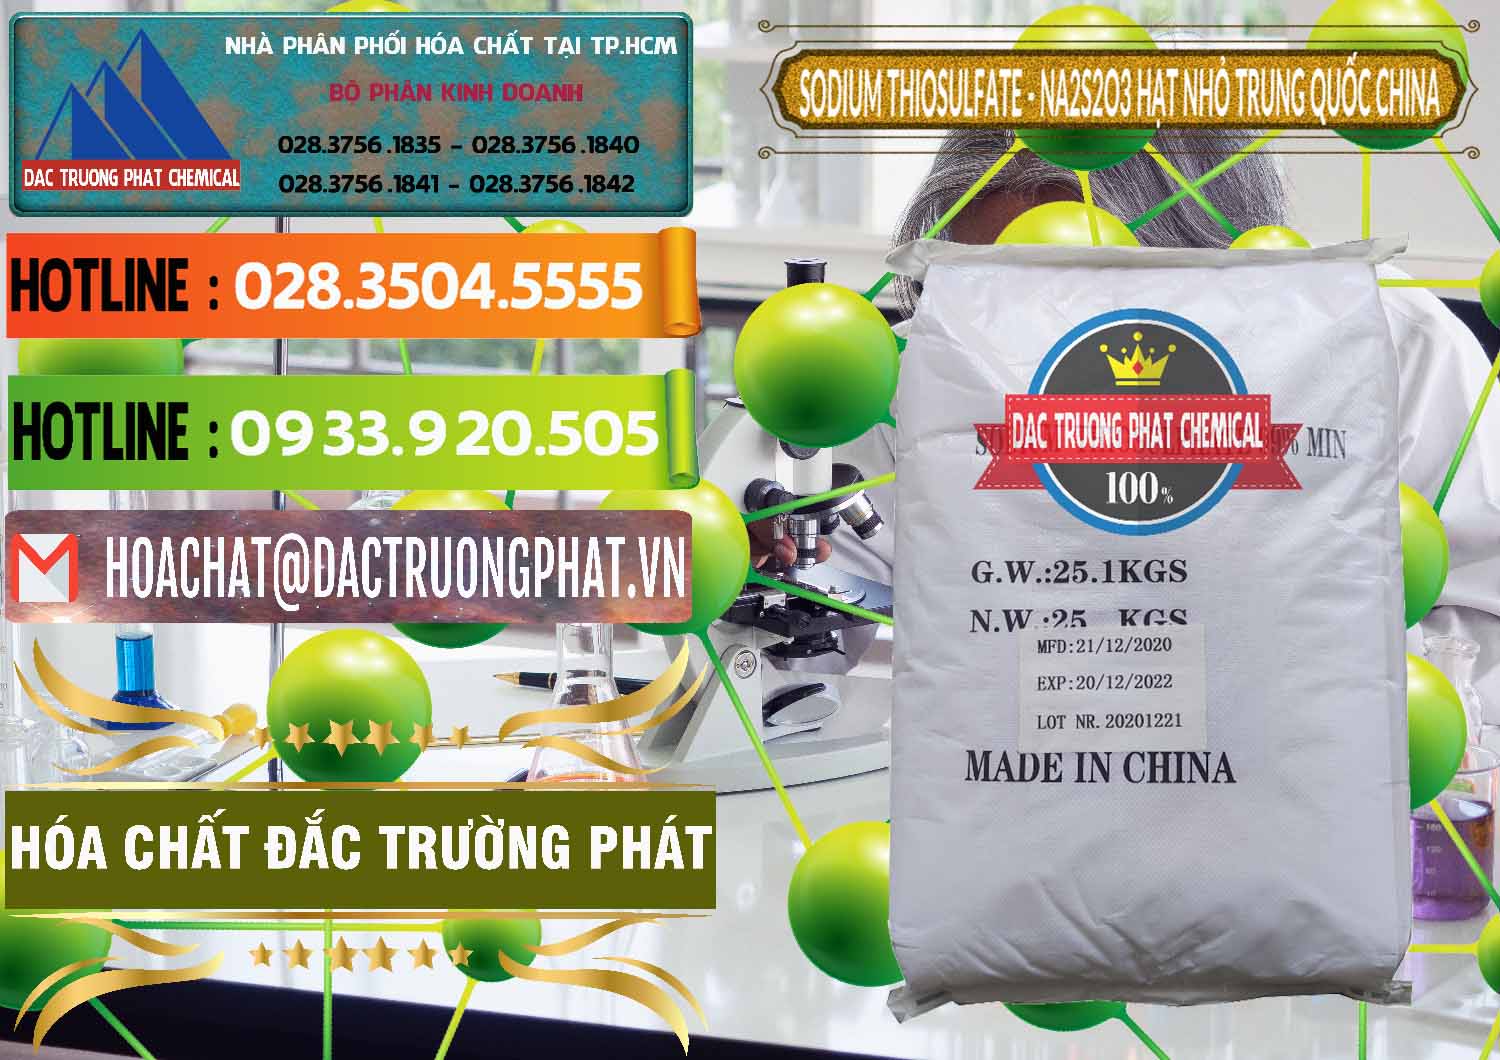 Nhà phân phối ( bán ) Sodium Thiosulfate - NA2S2O3 Hạt Nhỏ Trung Quốc China - 0204 - Đơn vị kinh doanh - phân phối hóa chất tại TP.HCM - cungcaphoachat.com.vn